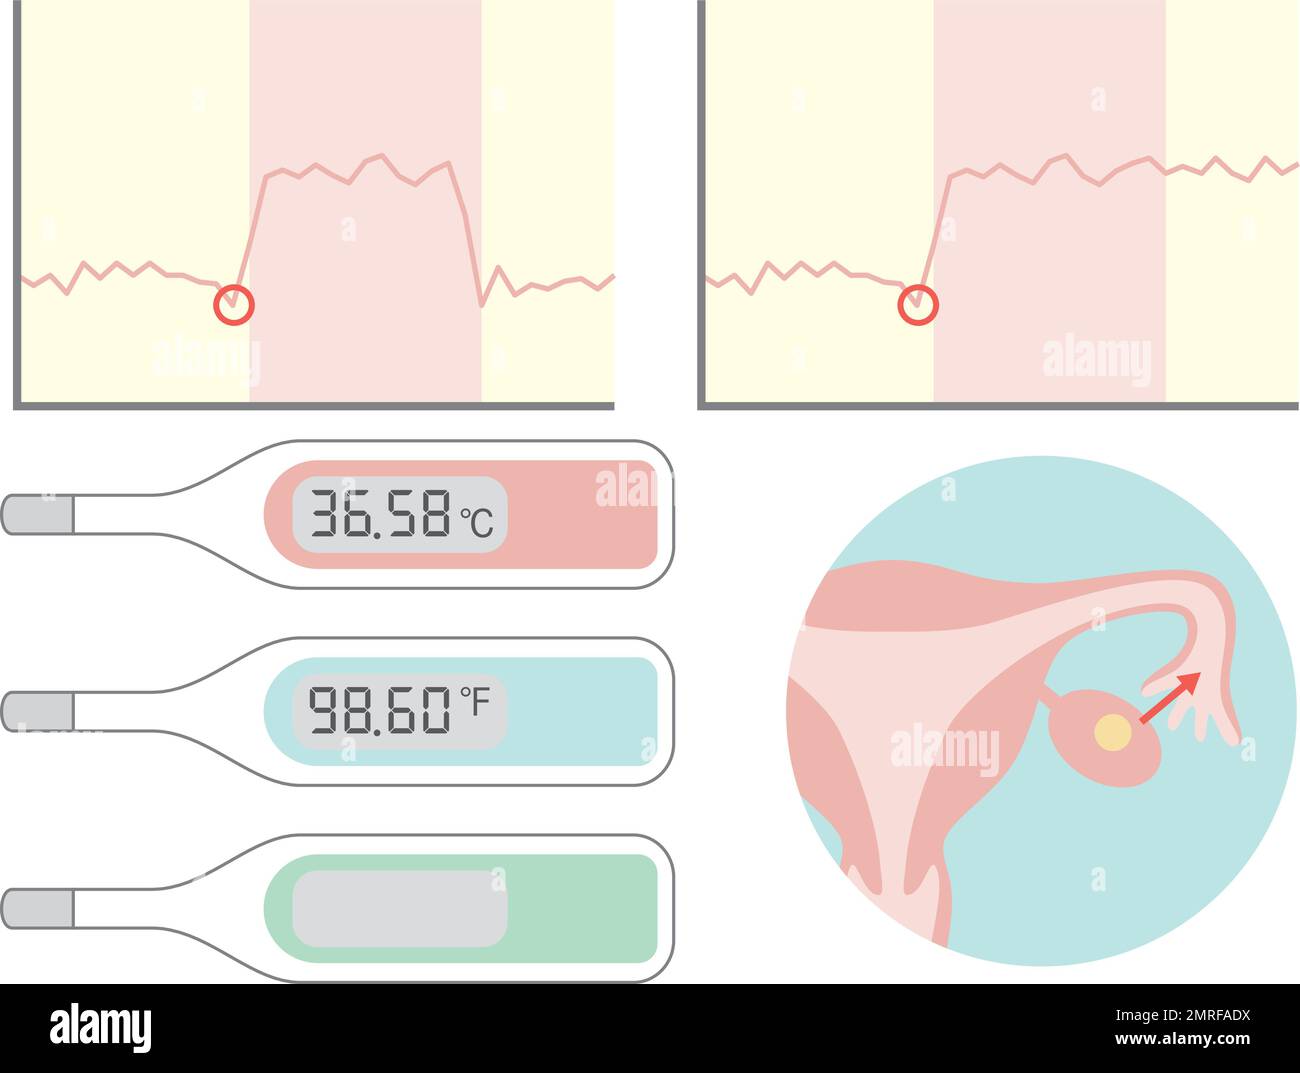 Thermomètre basal et graphique de température corporelle basale. Illustration de la grossesse et de l'accouchement. Illustration de Vecteur